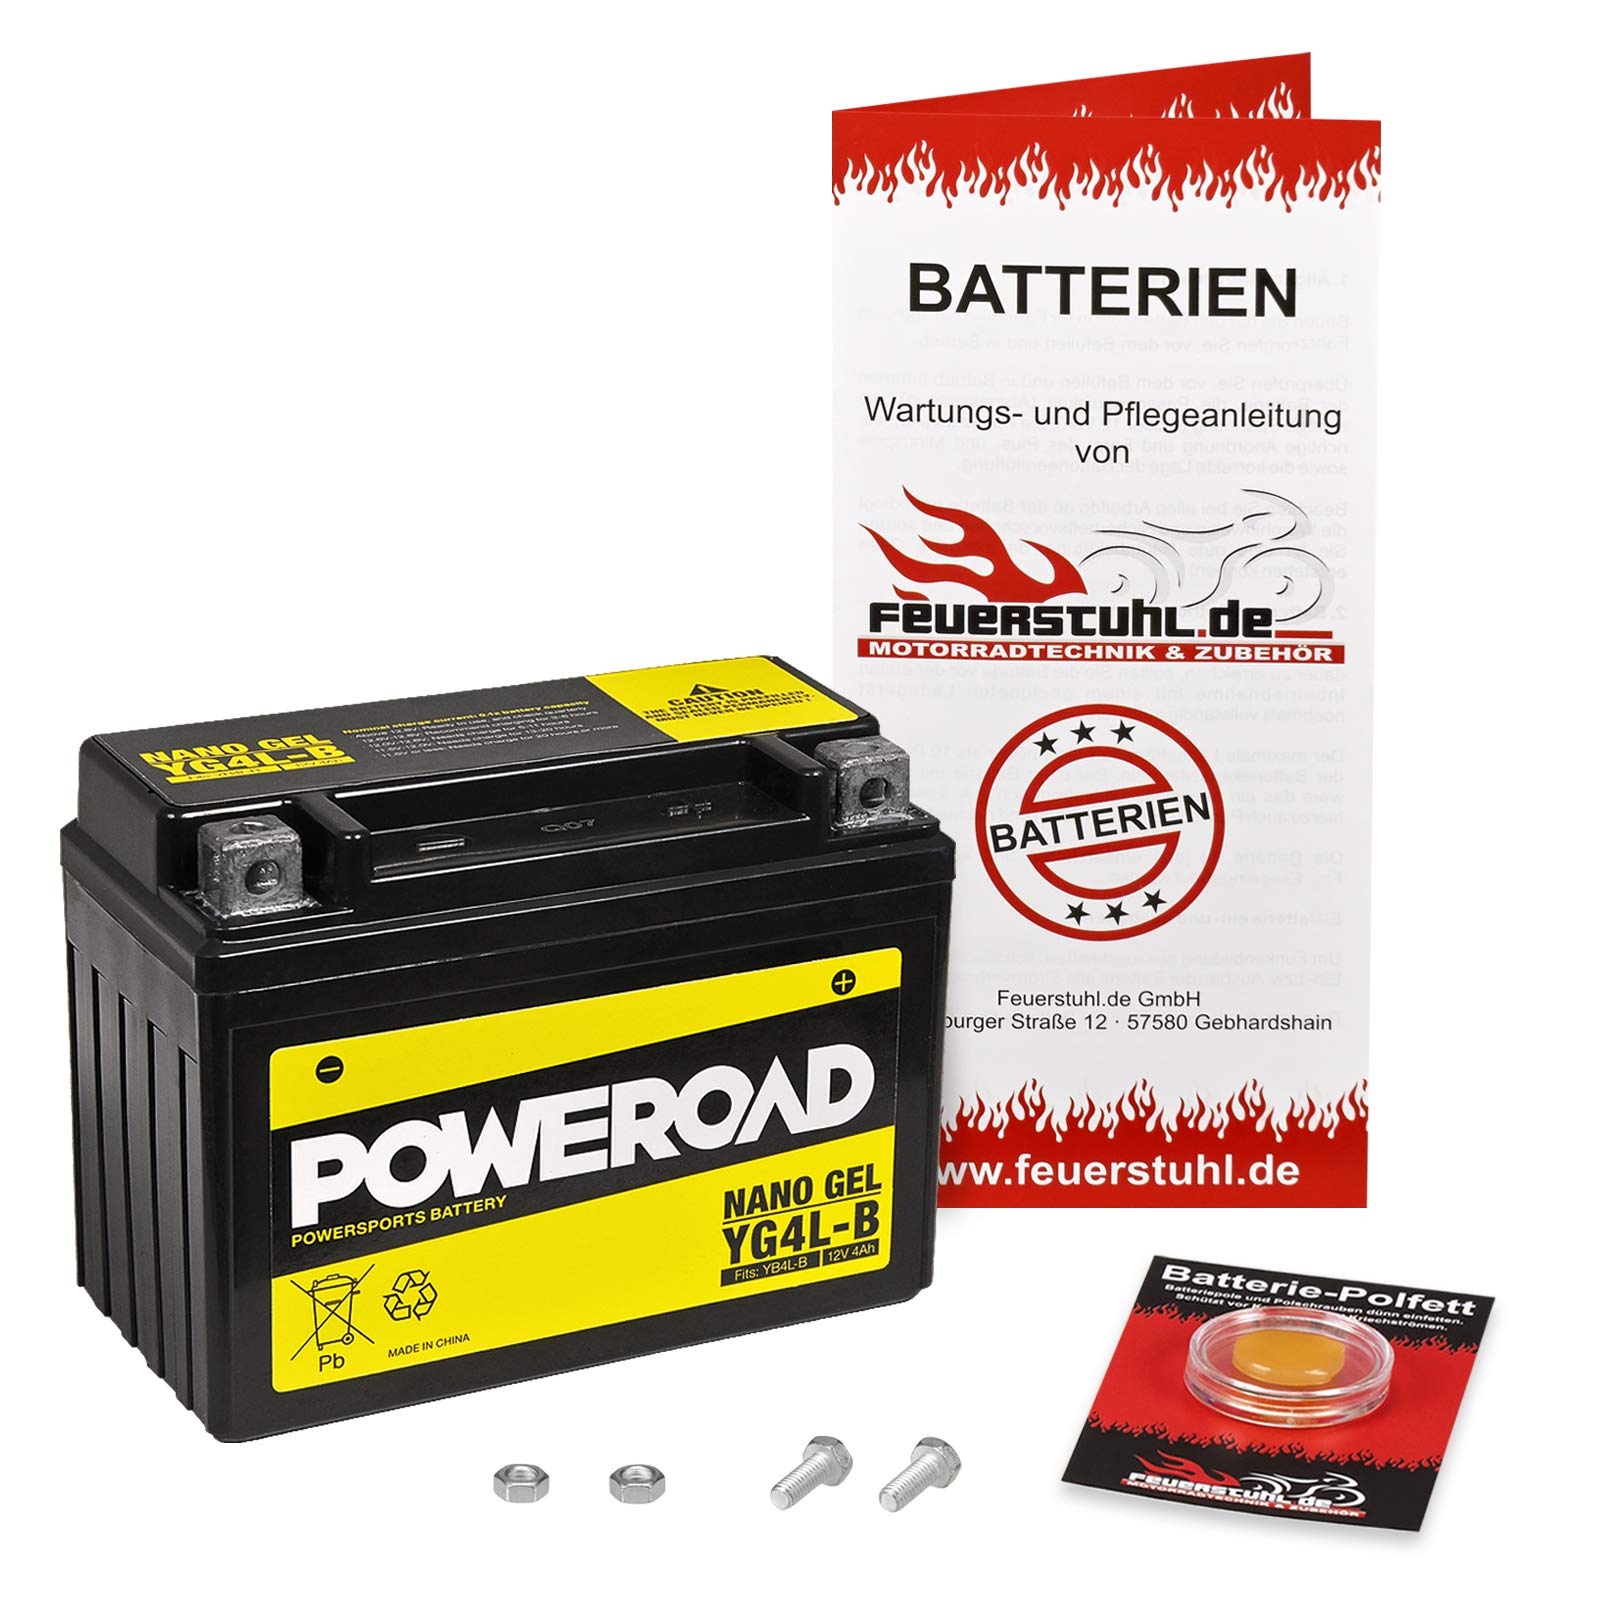 Gel-Batterie für Kawasaki KMX 125 (MX125B) wartungsfrei, einbaufertig, startklar, inkl. 7,50€ Pfand von Feuerstuhl.de GmbH